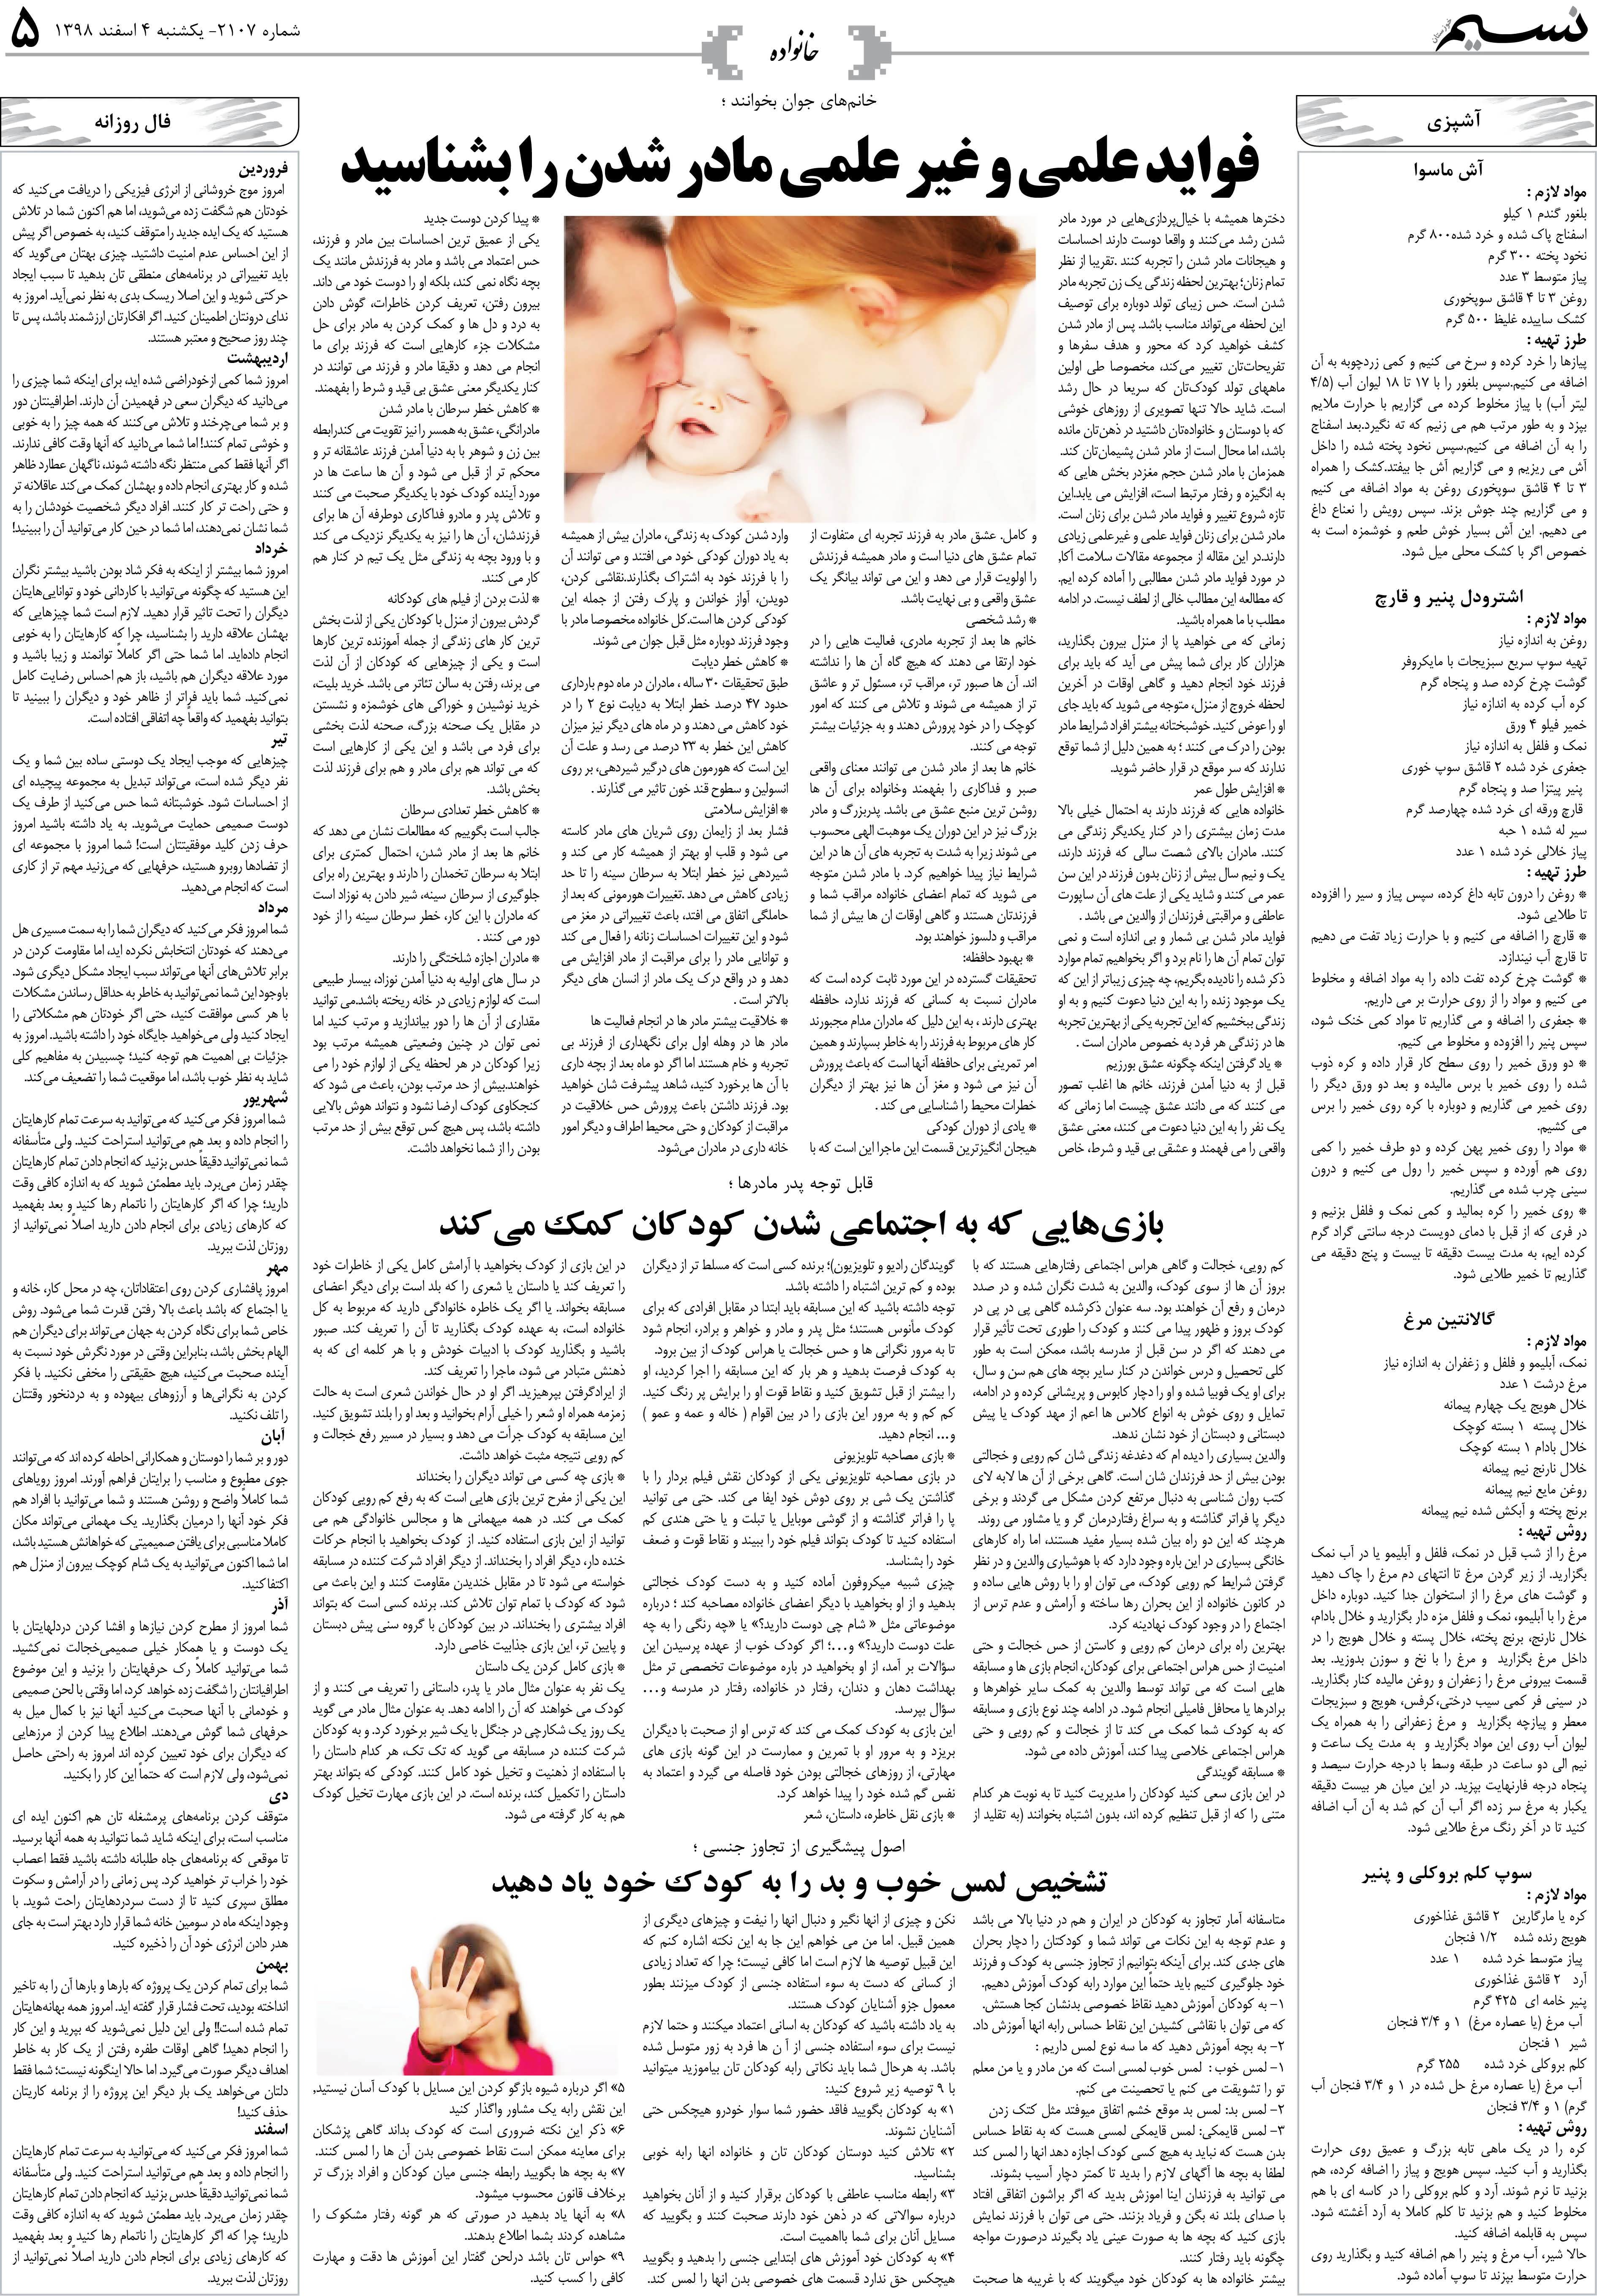 صفحه خانواده روزنامه نسیم شماره 2107